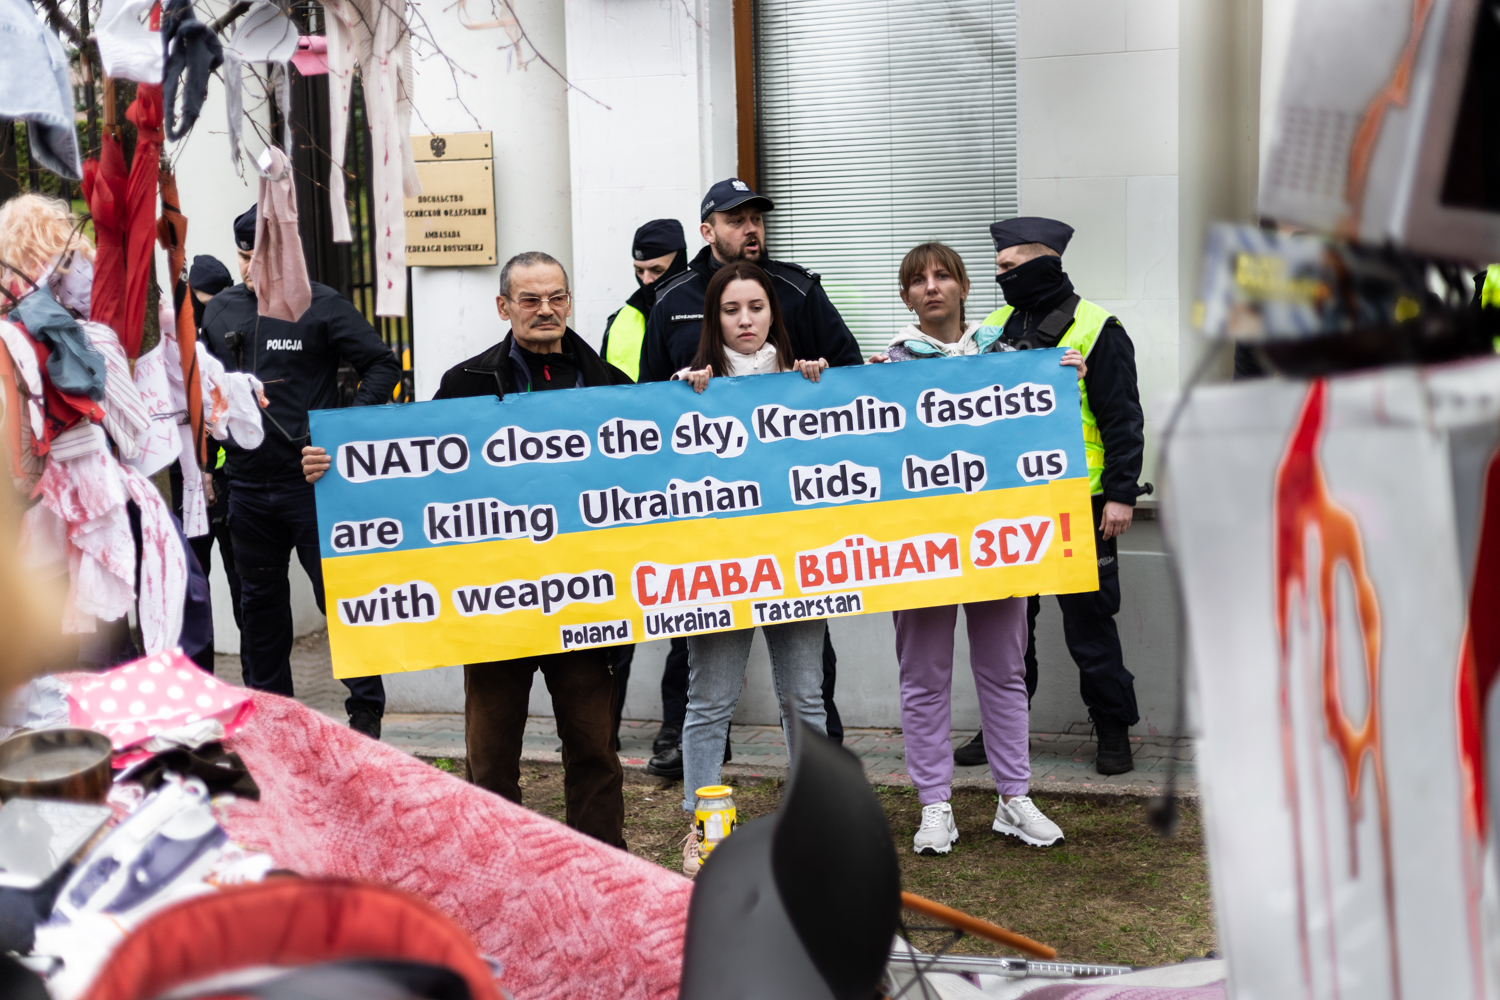 "Daj coś z worka dla orka!" - happening pod ambasadą Rosji. Foto Justyna Grochowska